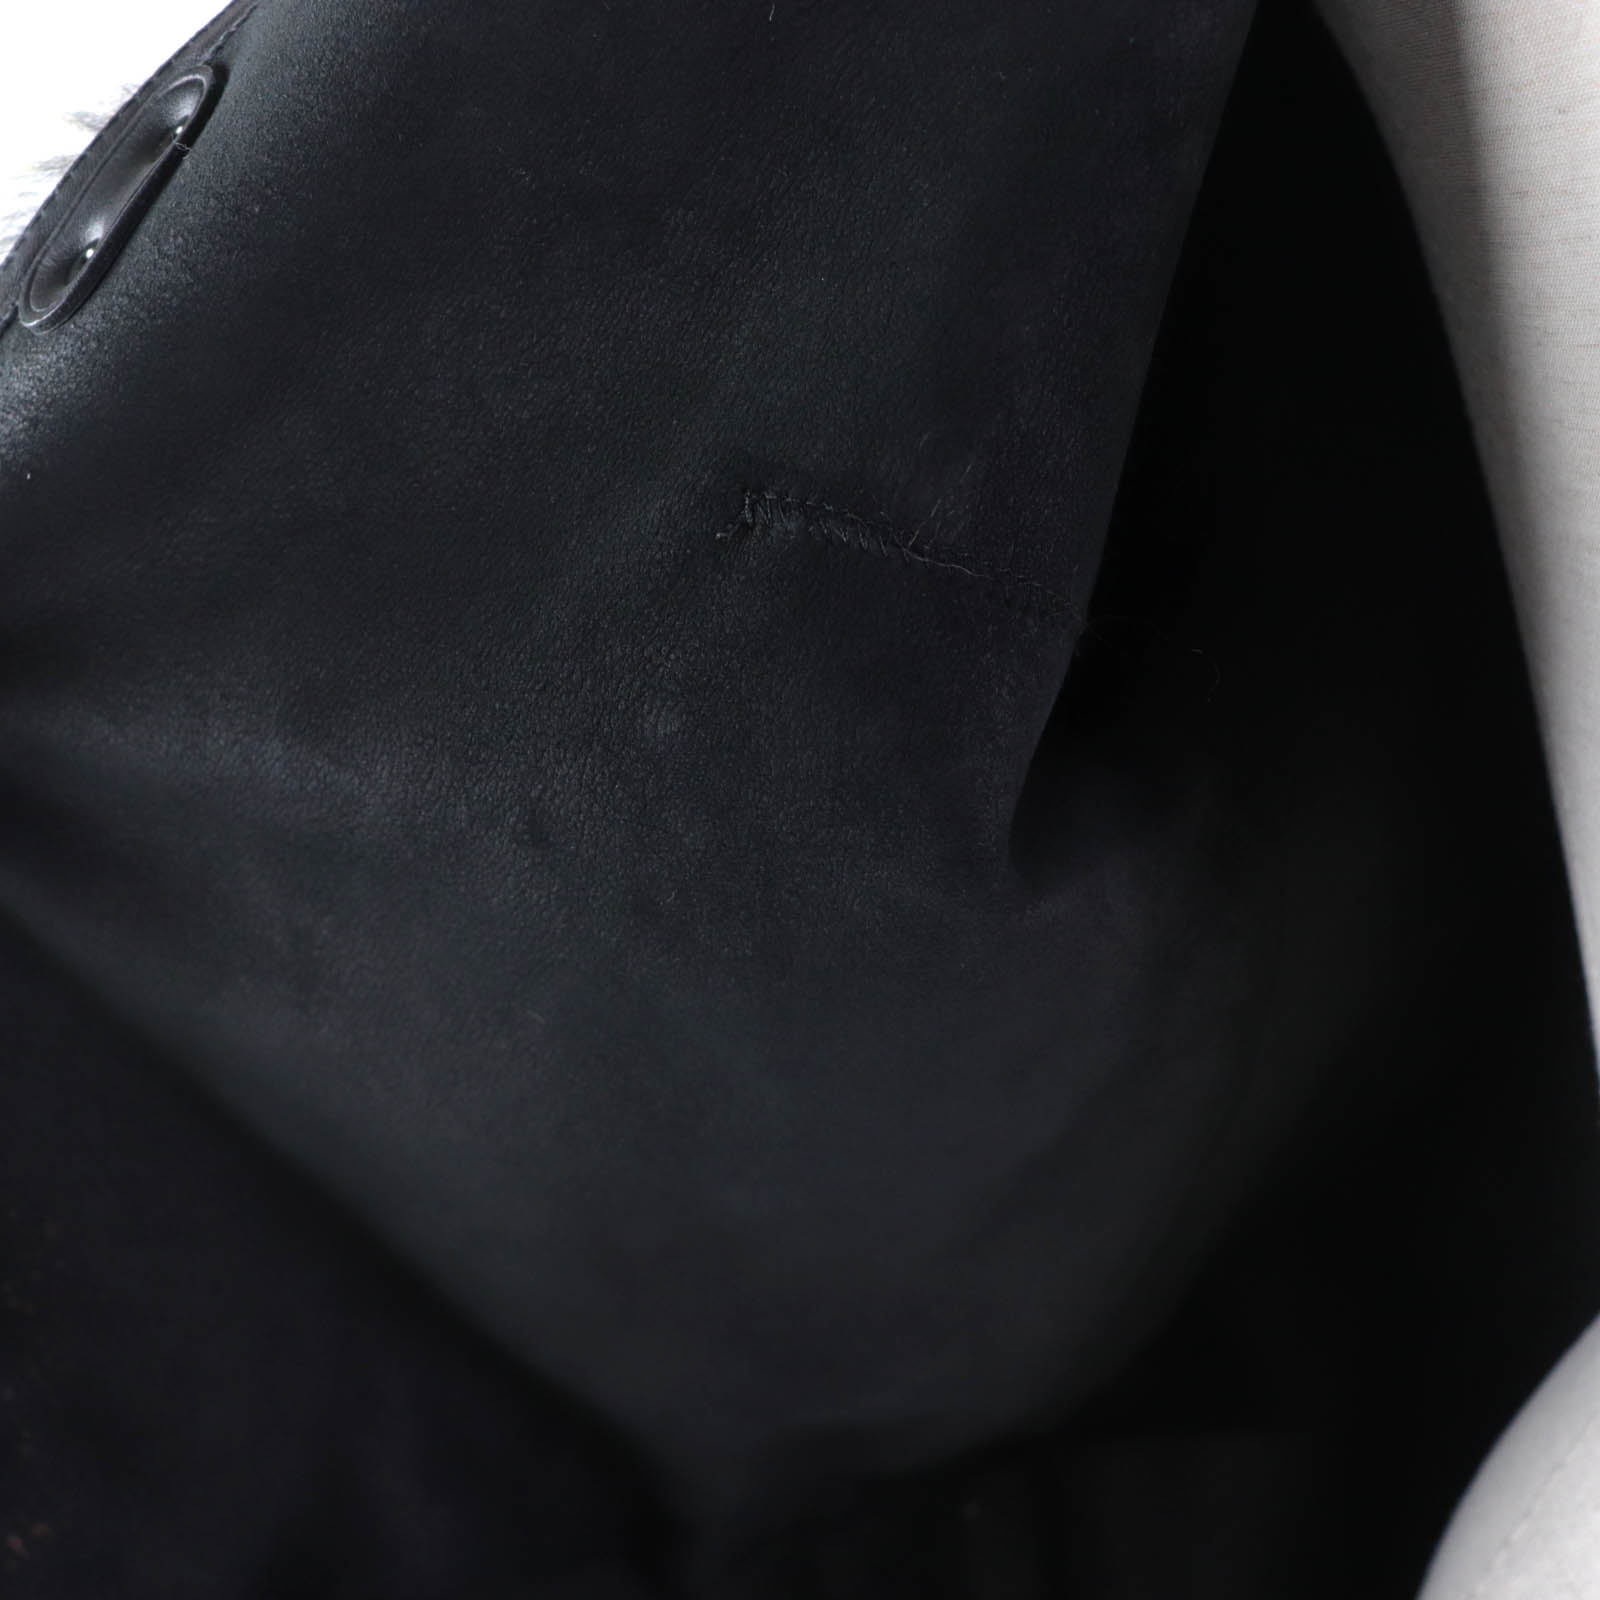  превосходный товар *COACH Coach кожа используя no color карман есть мутоновое пальто оттенок коричневого XS( Япония M размер соответствует ) USA производства стандартный товар женский 